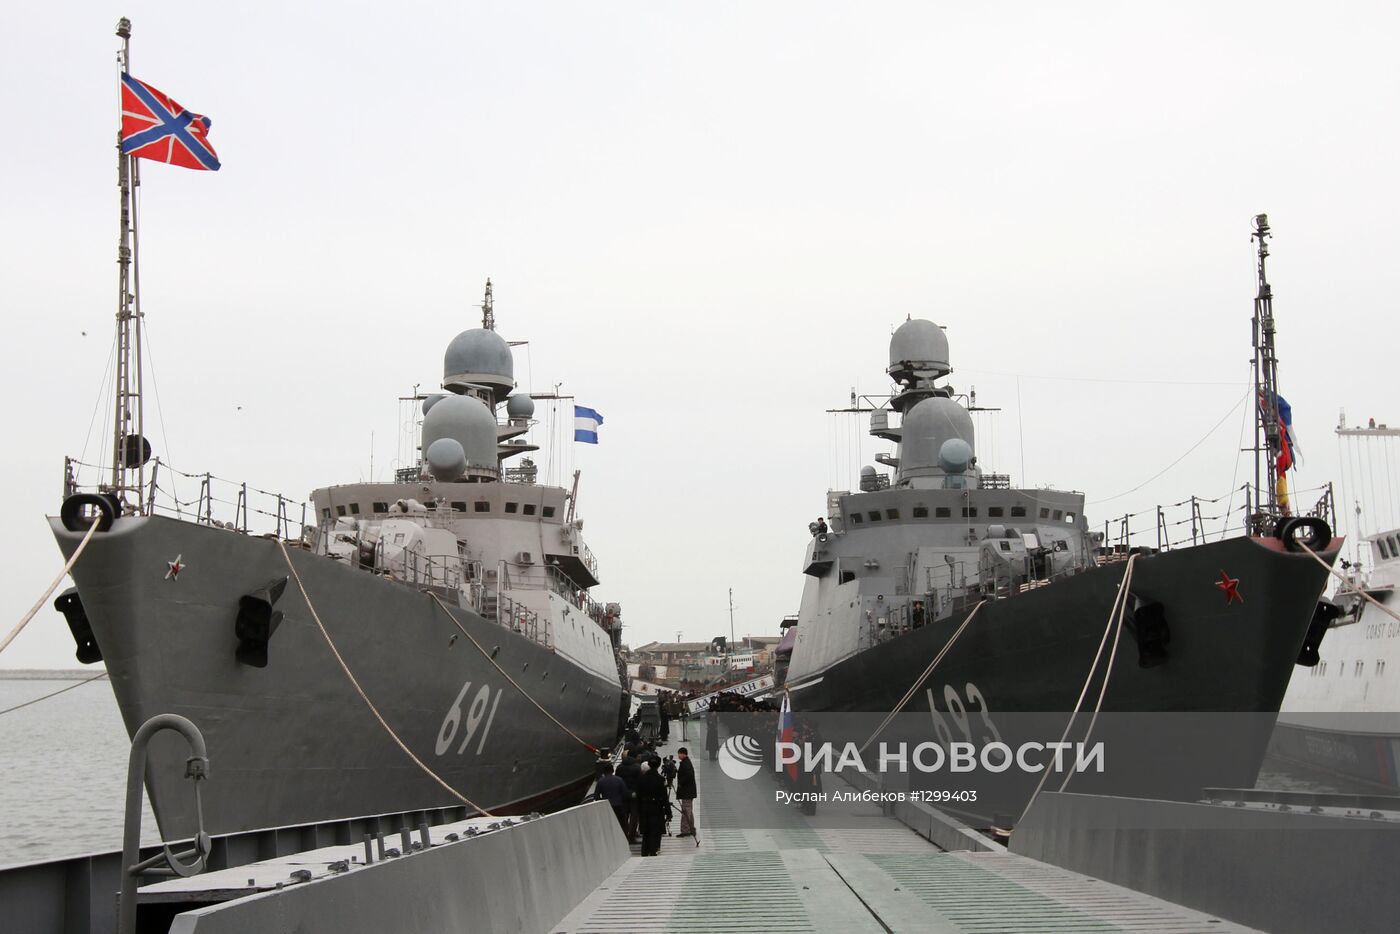 Ракетный корабль "Дагестан" вступил в строй Каспийской флотилии